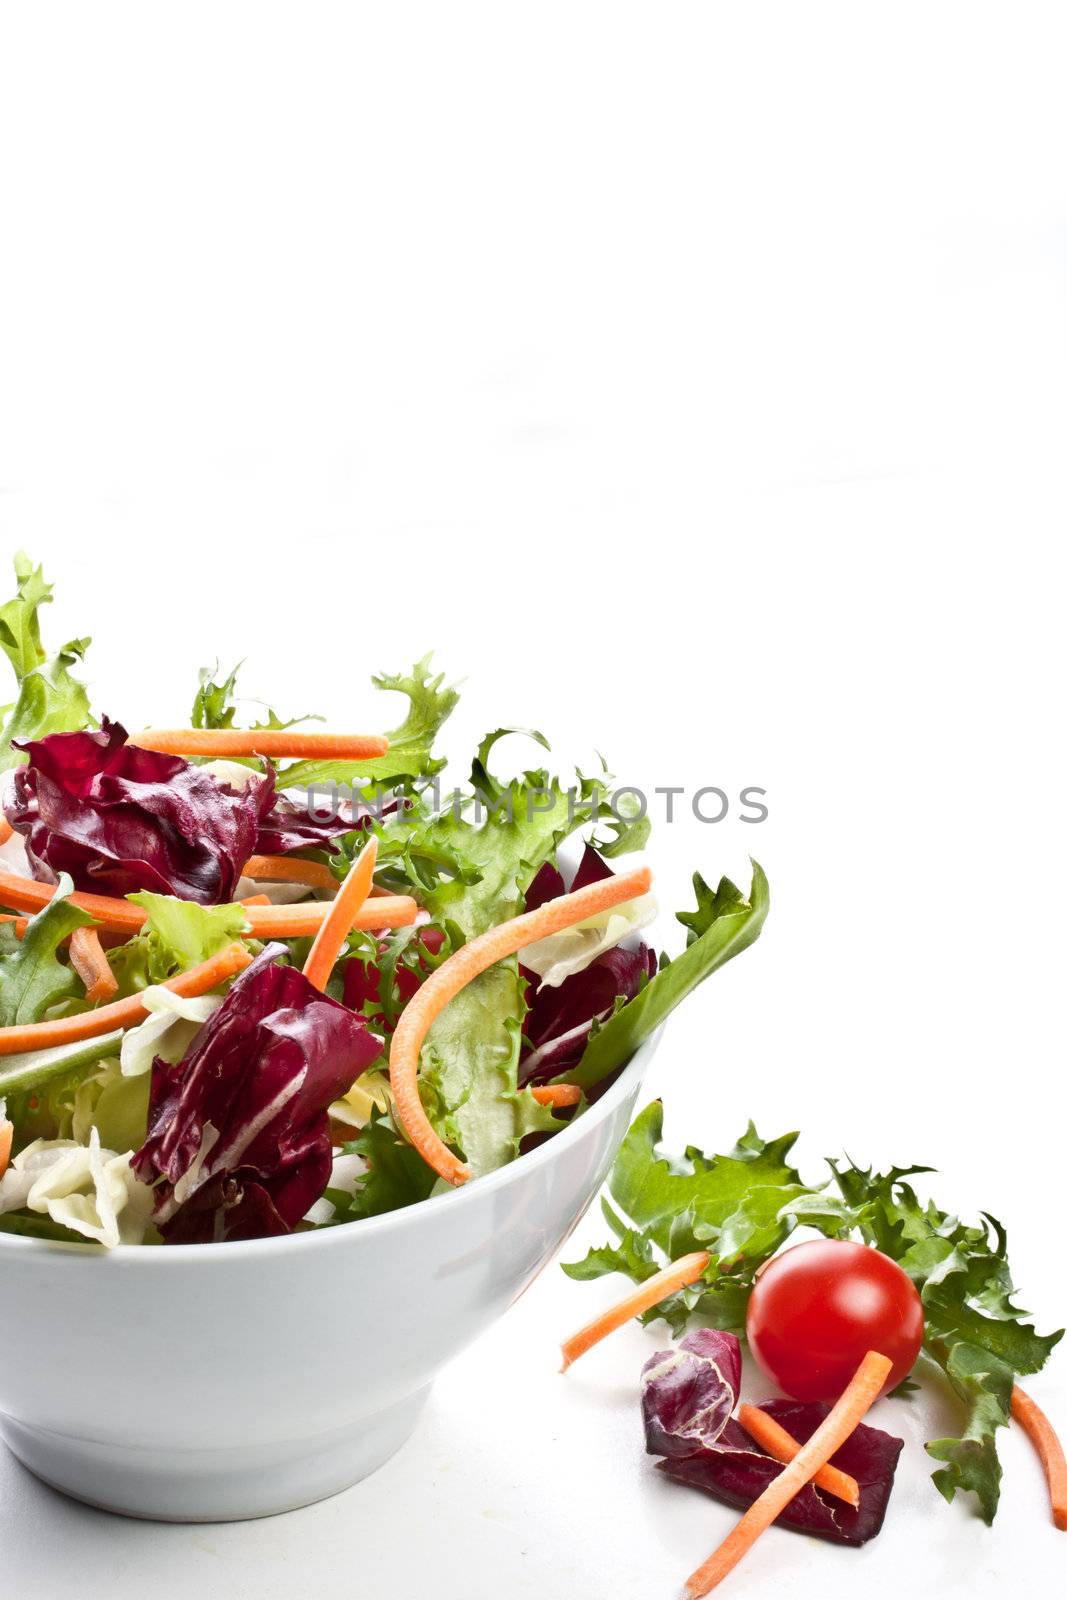 salad by maxg71